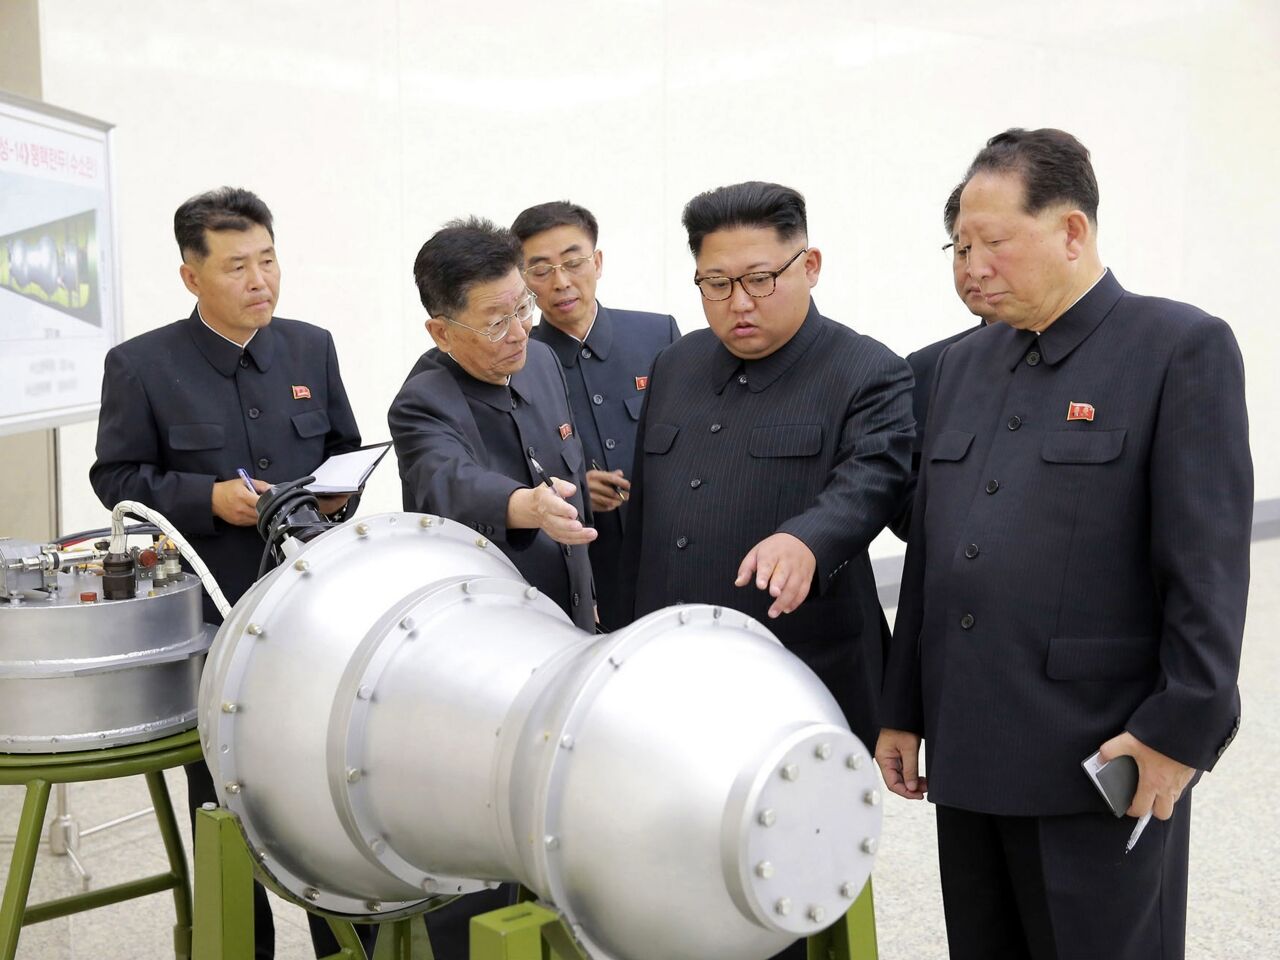 朝鮮稱會將核道路走到底